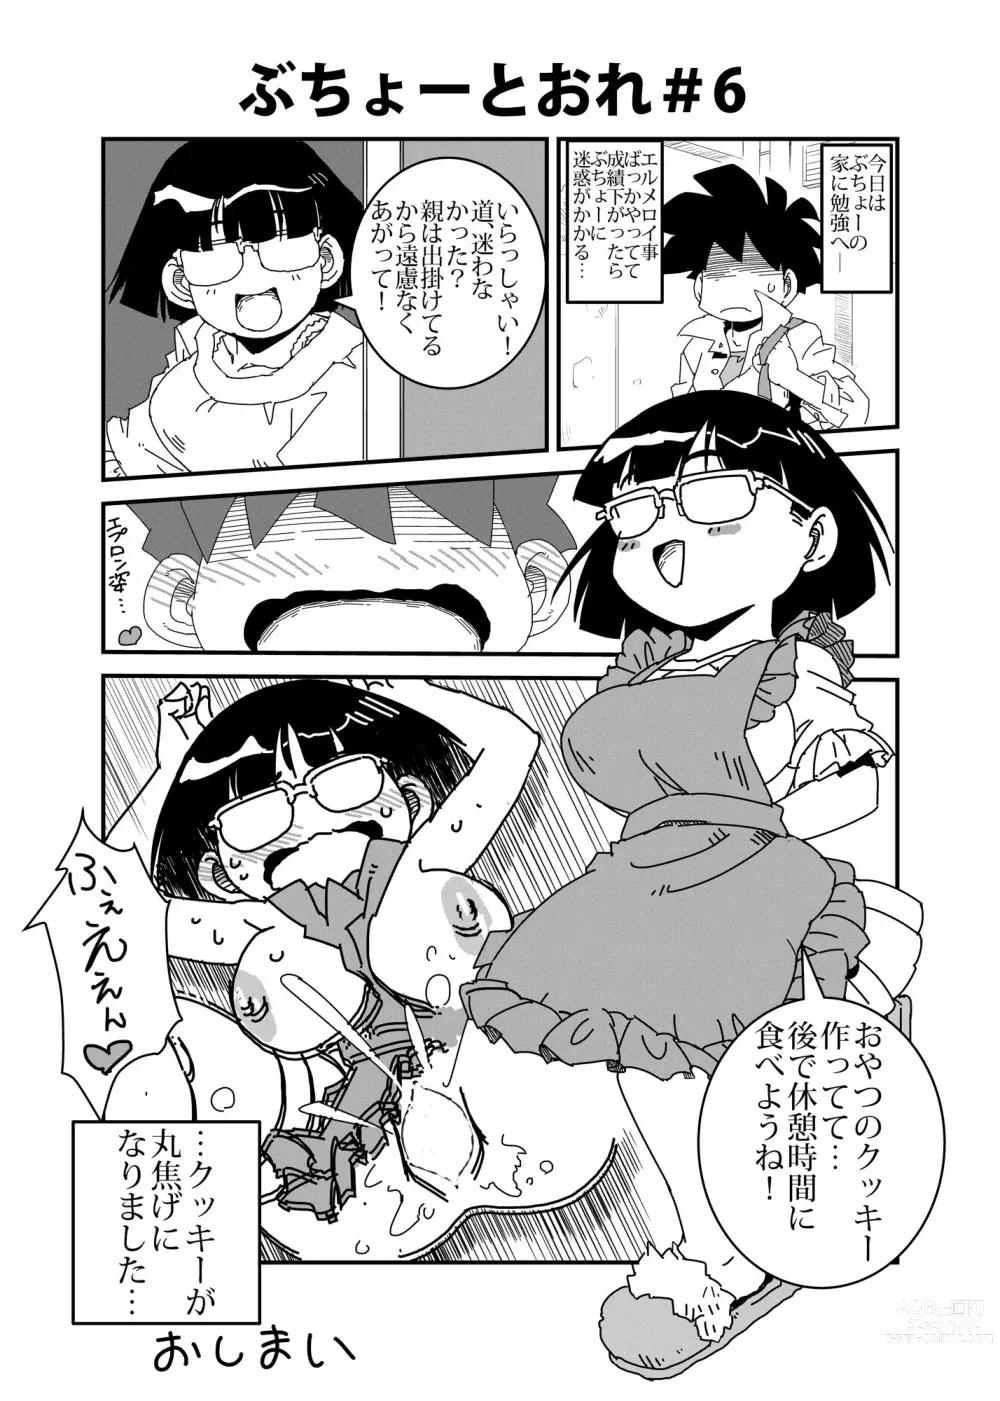 Page 6 of doujinshi Buchou to Ore